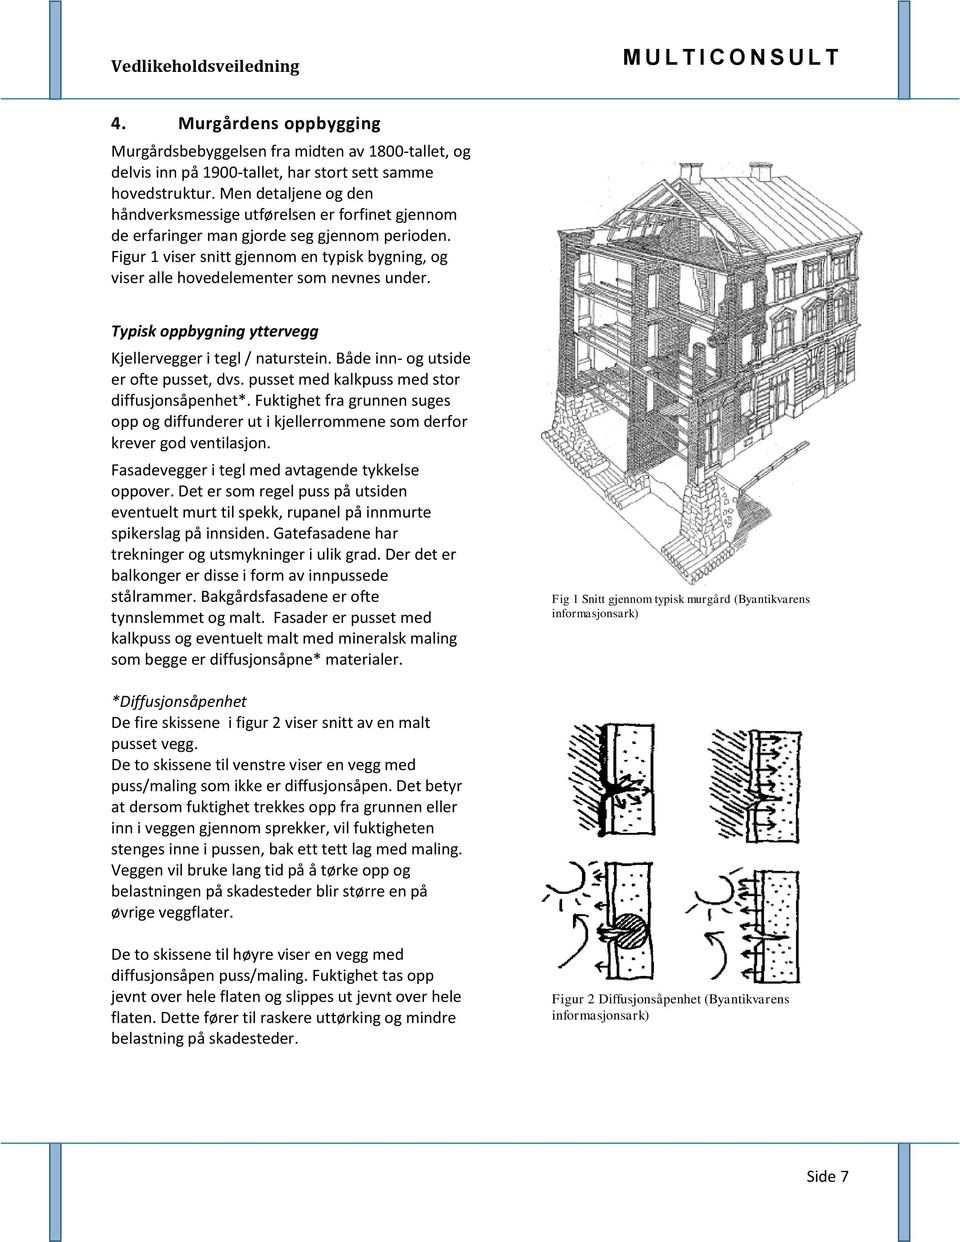 Figur 1 viser snitt gjennom en typisk bygning, og viser alle hovedelementer som nevnes under. Typisk oppbygning yttervegg Kjellervegger i tegl / naturstein. Både inn- og utside er ofte pusset, dvs.